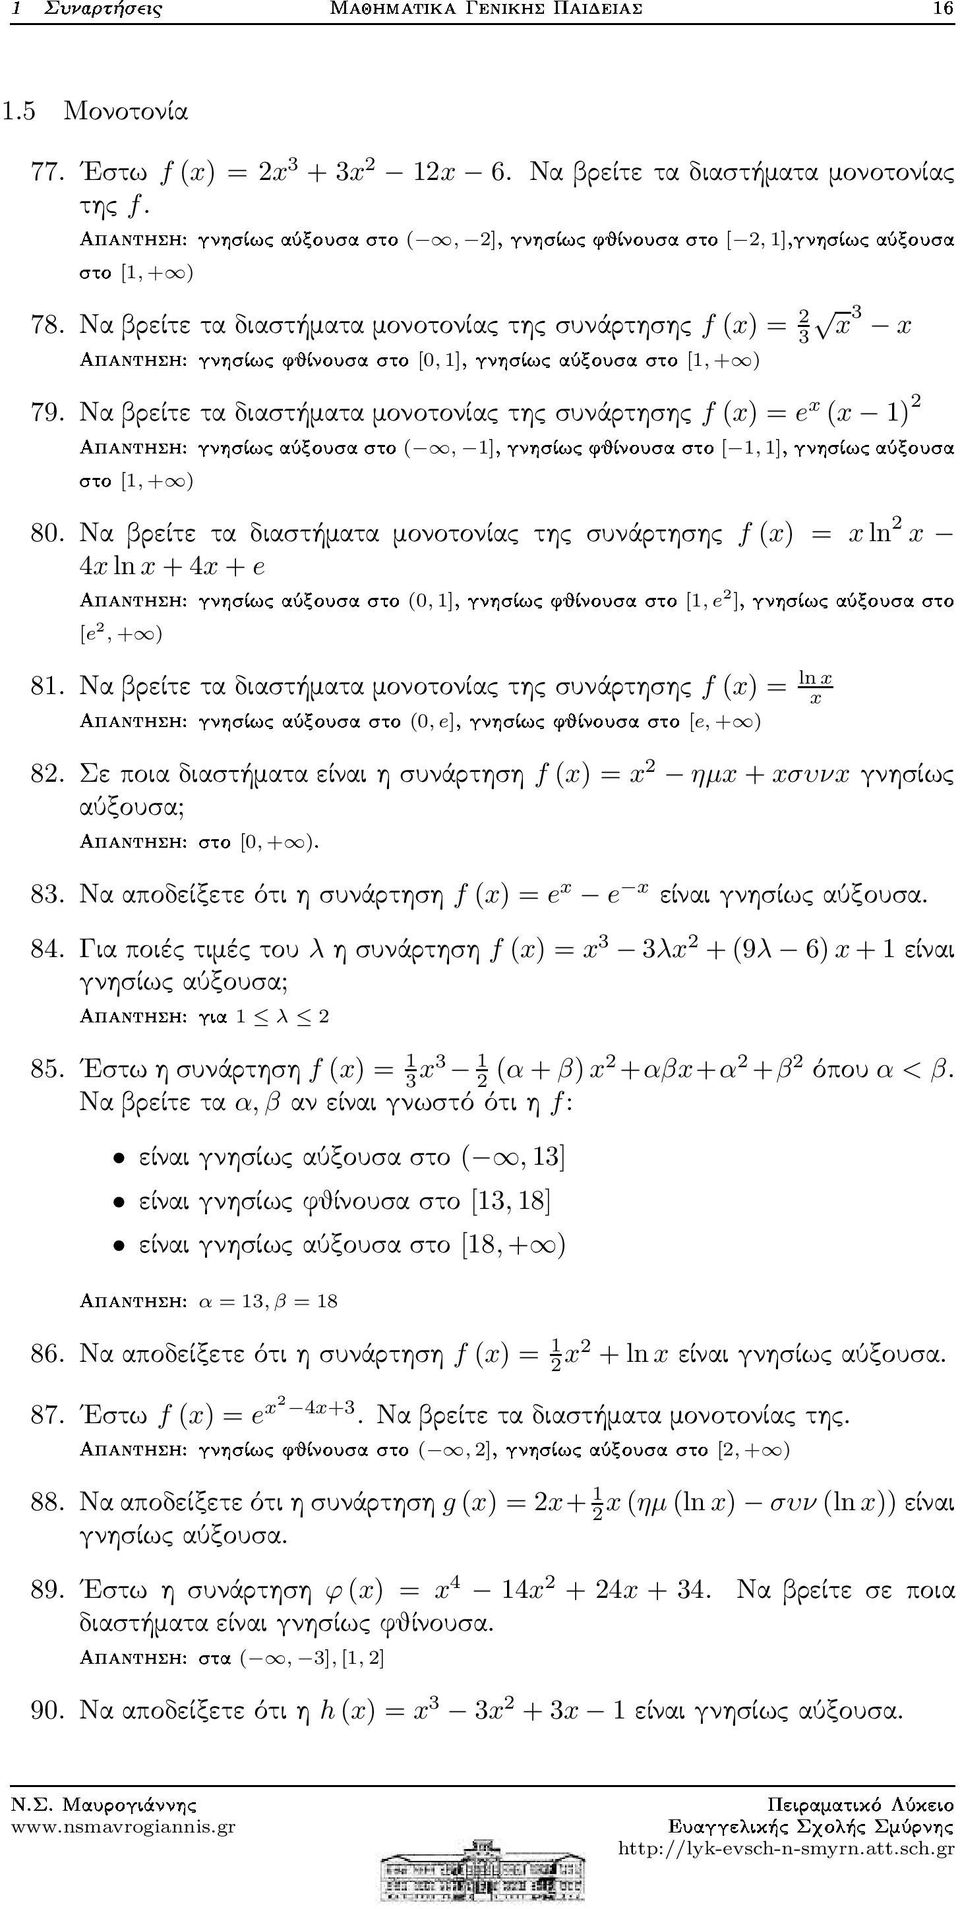 Ναβρείτεταδιαστήματαμονοτονίαςτηςσυνάρτησης f (x) = e x (x 1) ØÓ[1, + ) 80.Να βρείτε τα διαστήματα μονοτονίας της συνάρτησης f (x) = xln x 4xlnx+4x+e [e,+ ) 81.